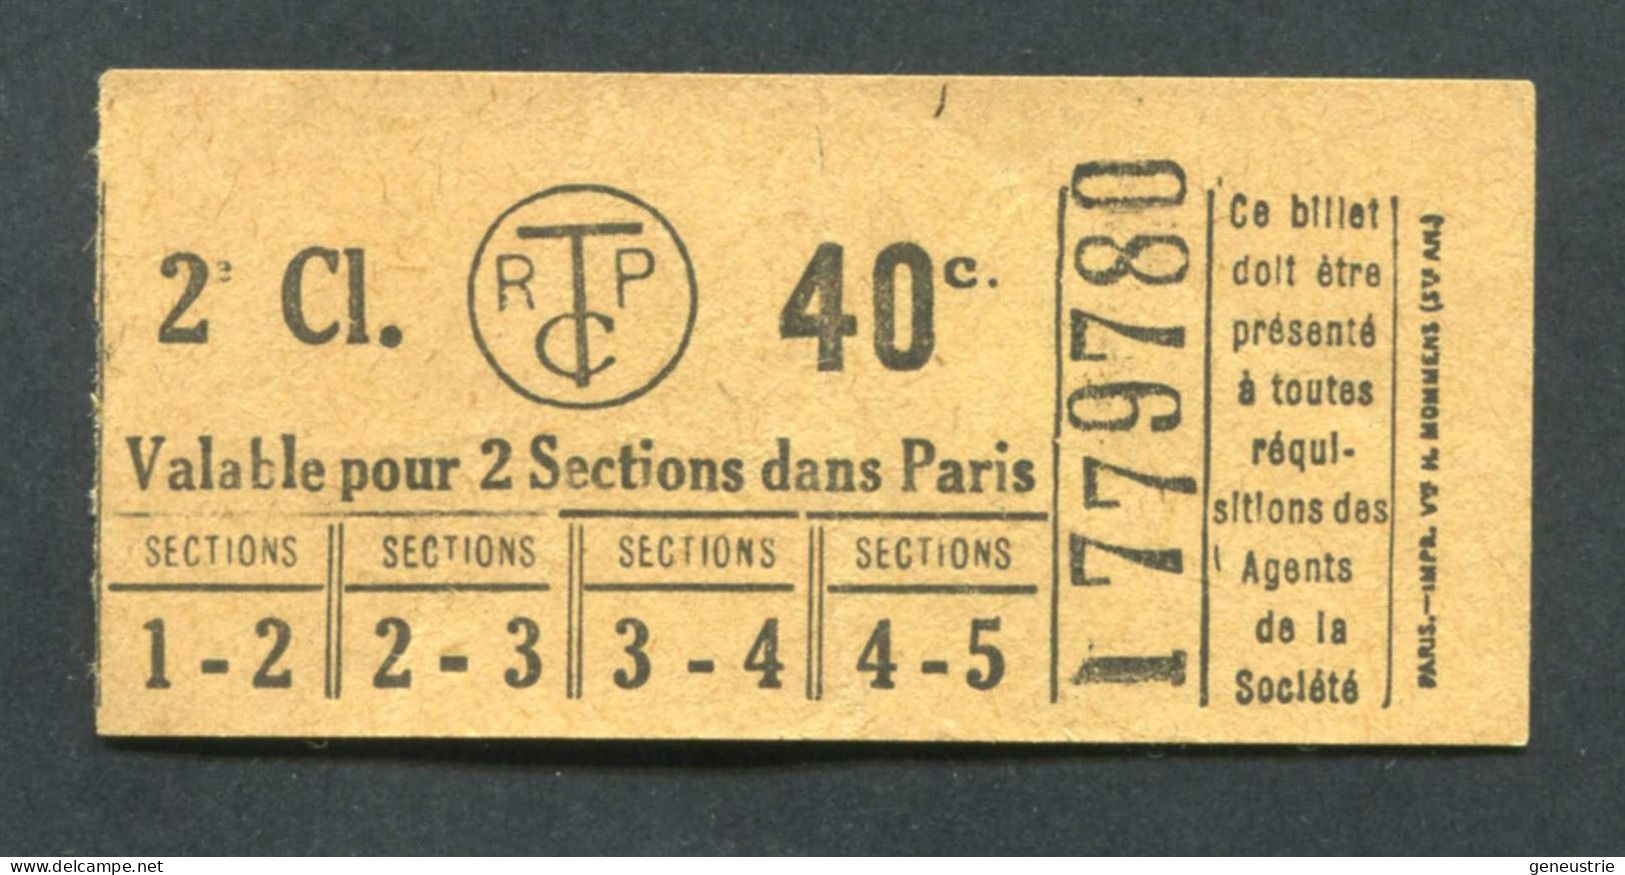 Ticket De Tramways Parisiens 1922-1924 (STCRP) 2e Classe 40c - Paris" Chemin De Fer - Tramway - Tram - Europa